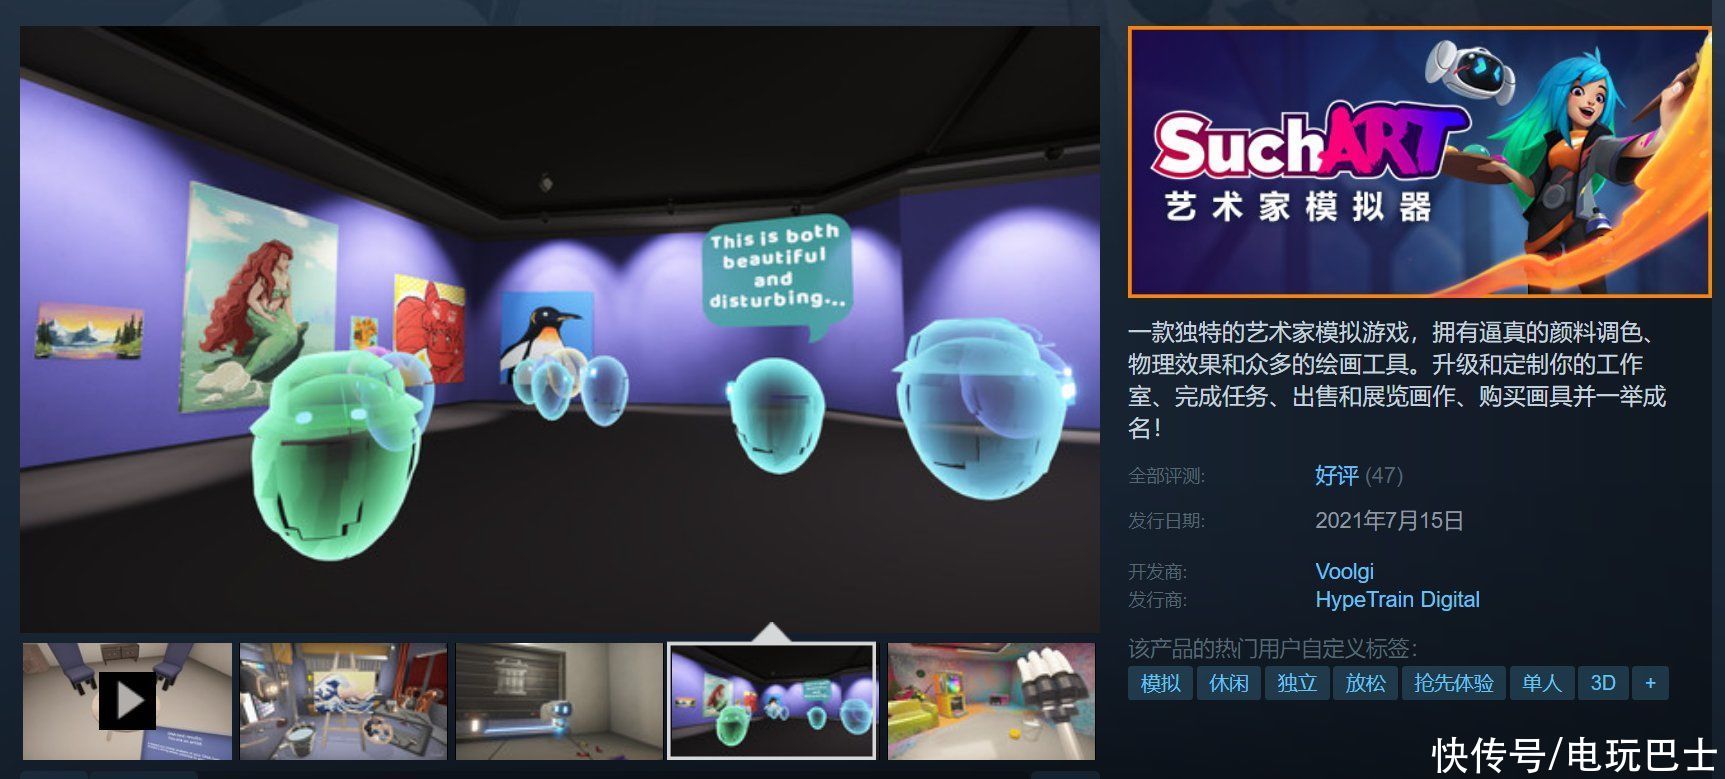 模拟游戏|Steam《SuchArt：艺术家模拟器》今日正式发售